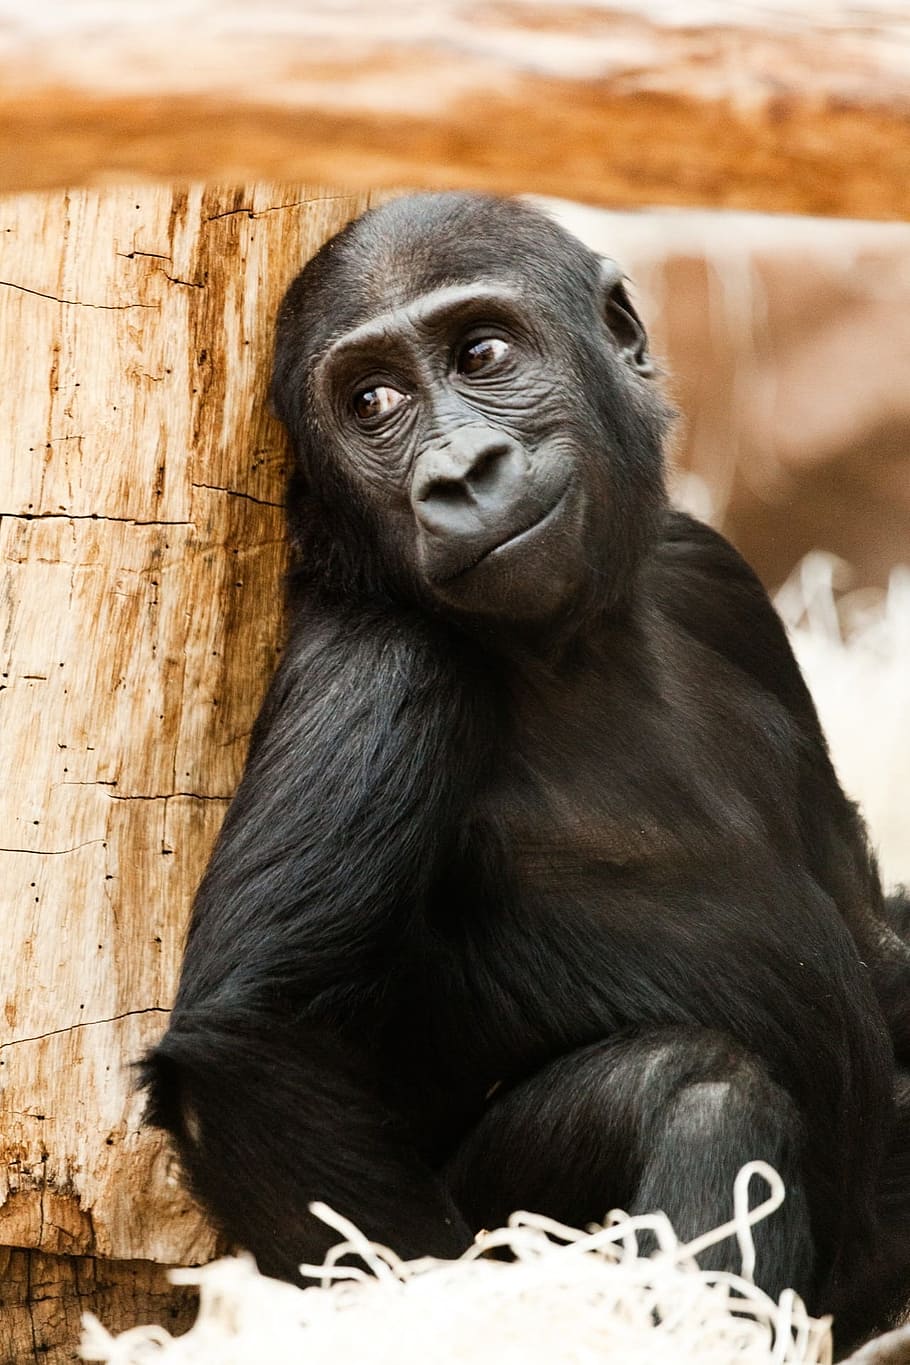 hitam, monyet, duduk, log, bayi, hewan, gorila, afrika, primata, kera